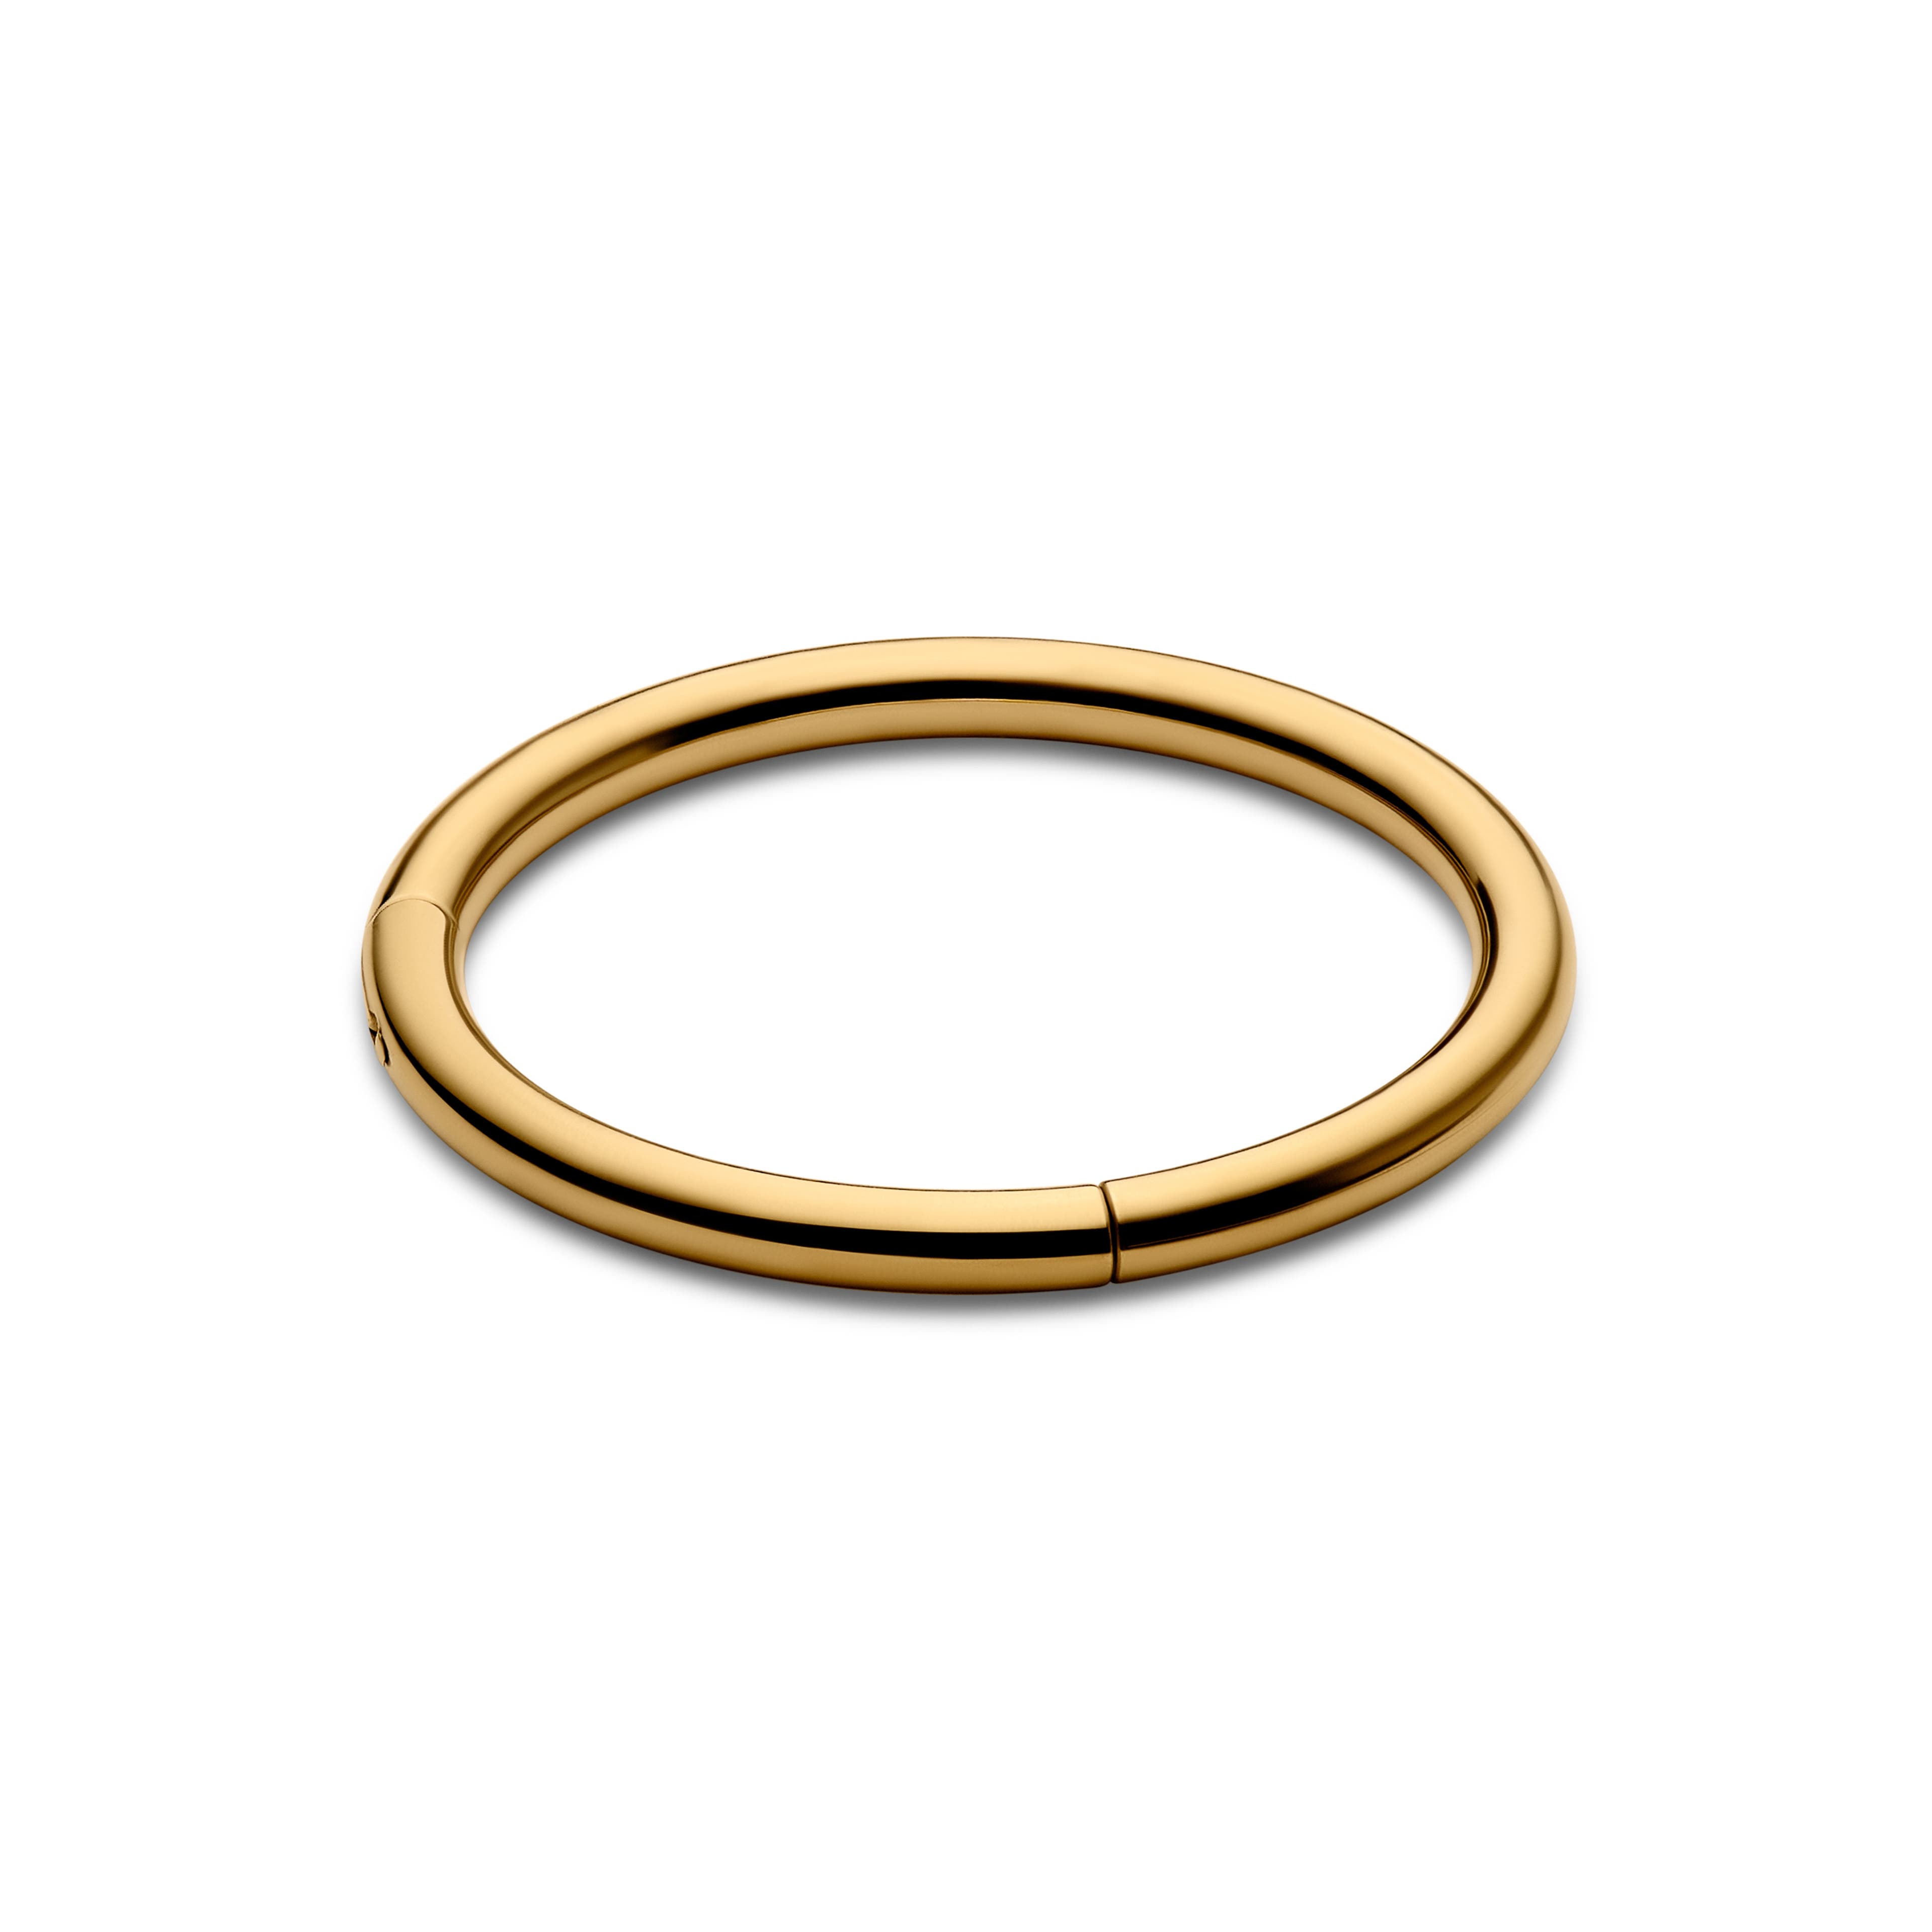 6 mm Gulltonet Piercing Ring